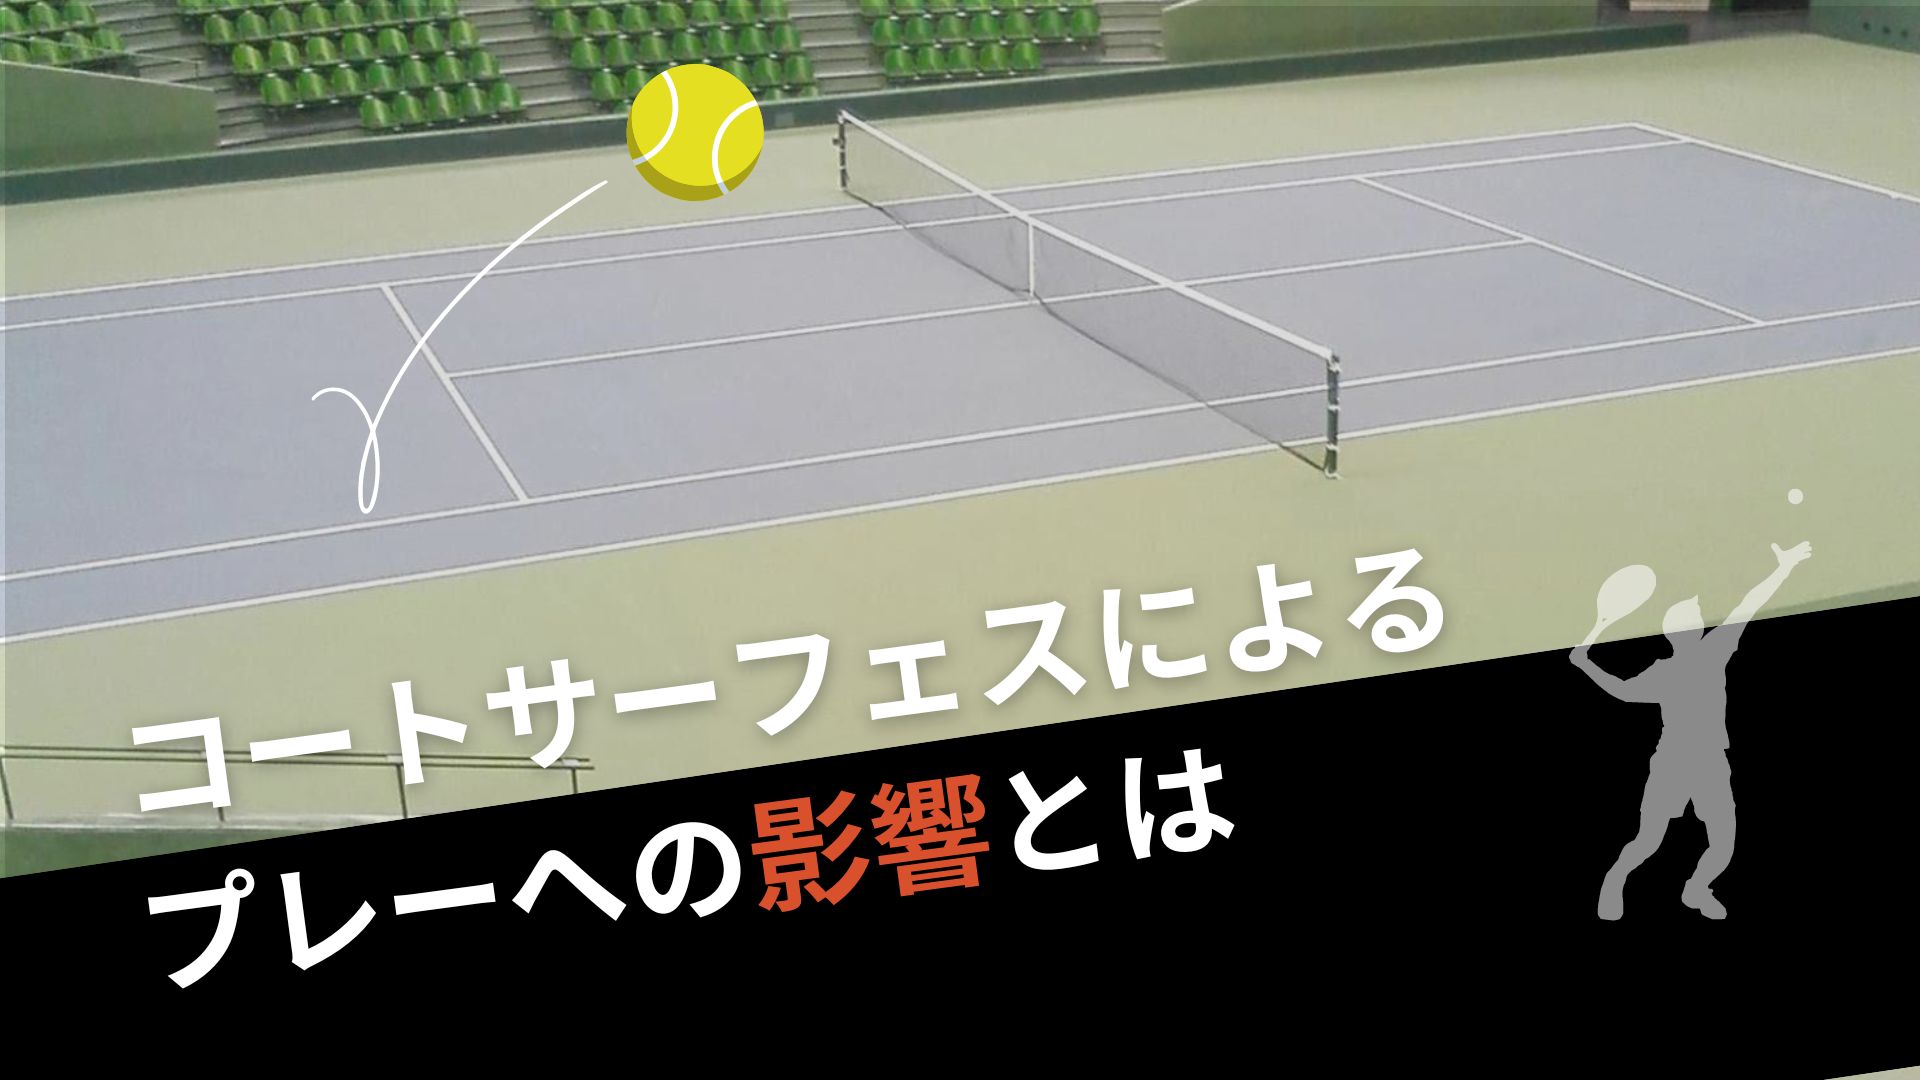 テニスプレーヤーが考えるべきコートサーフェスによるプレーへの影響